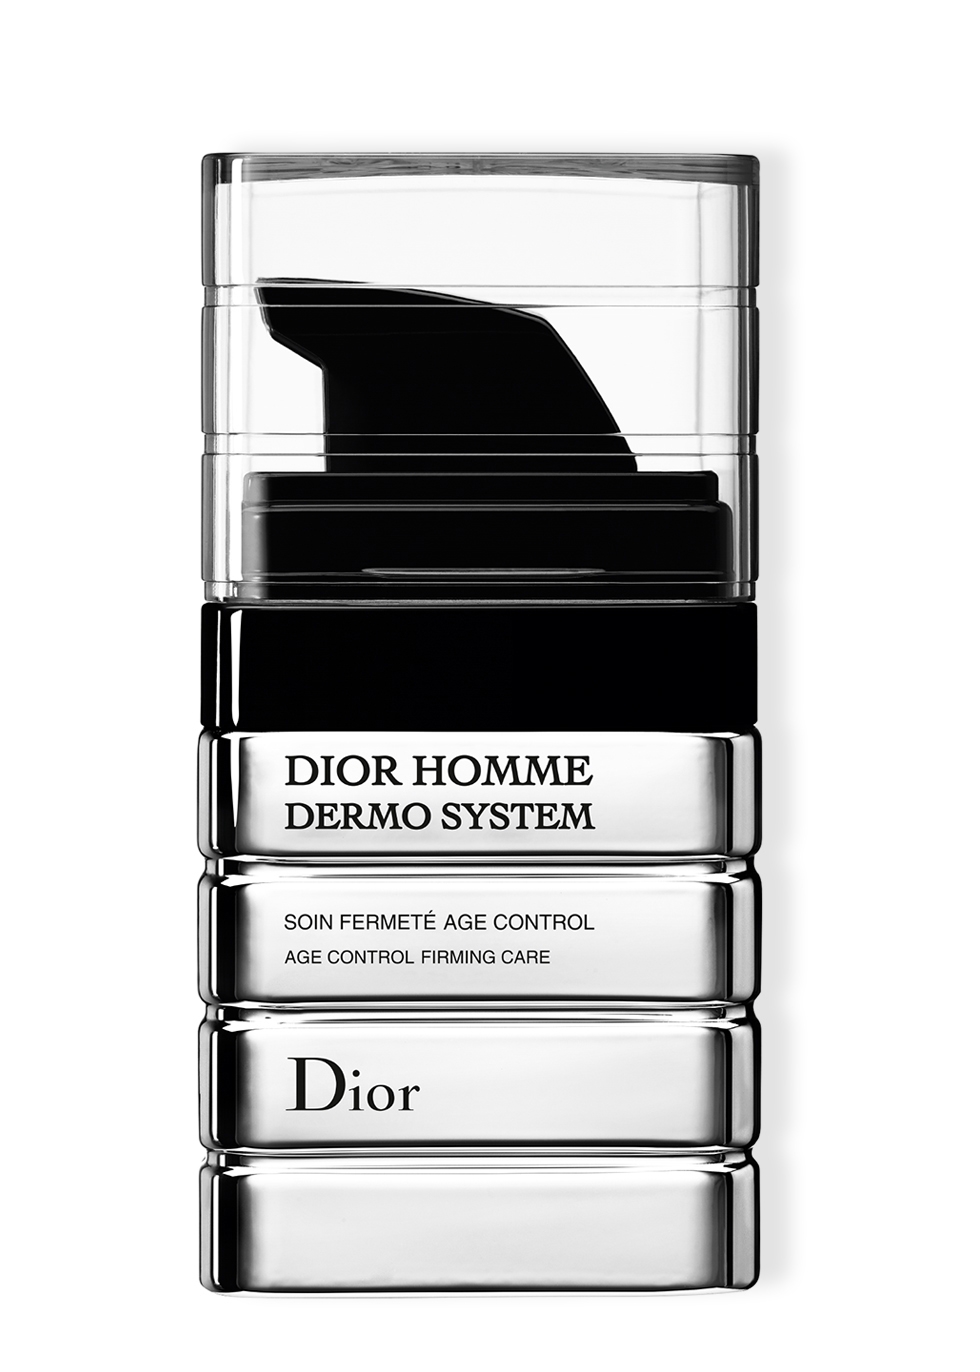 dior homme dermo system repairing moisturizing emulsion